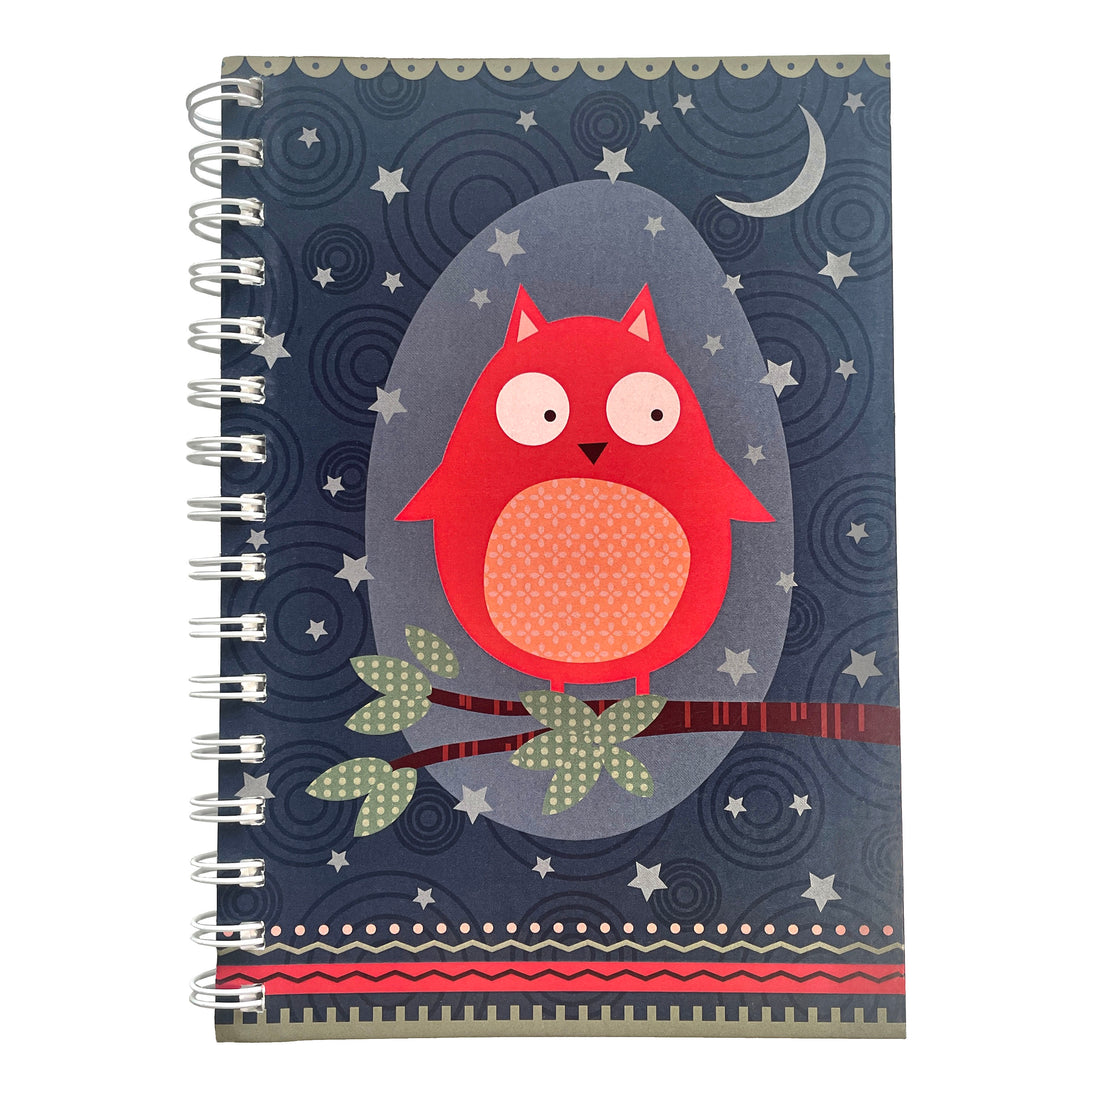 Owl Notebook Journal